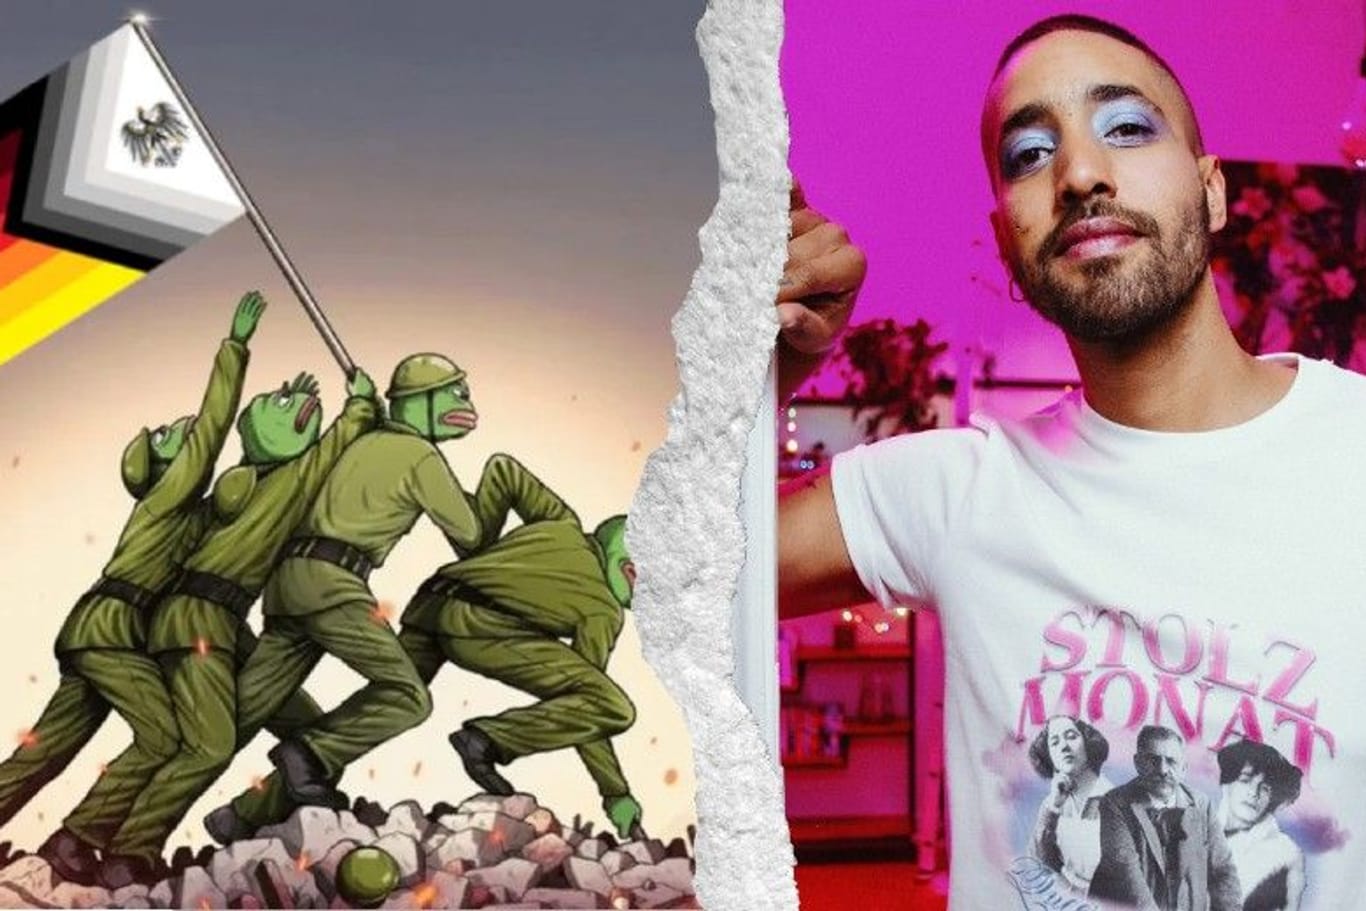 "Stolzmonat": Jetzt werden der homophoben Kampagne T-Shirts mit queeren Motiven entgegengesetzt.